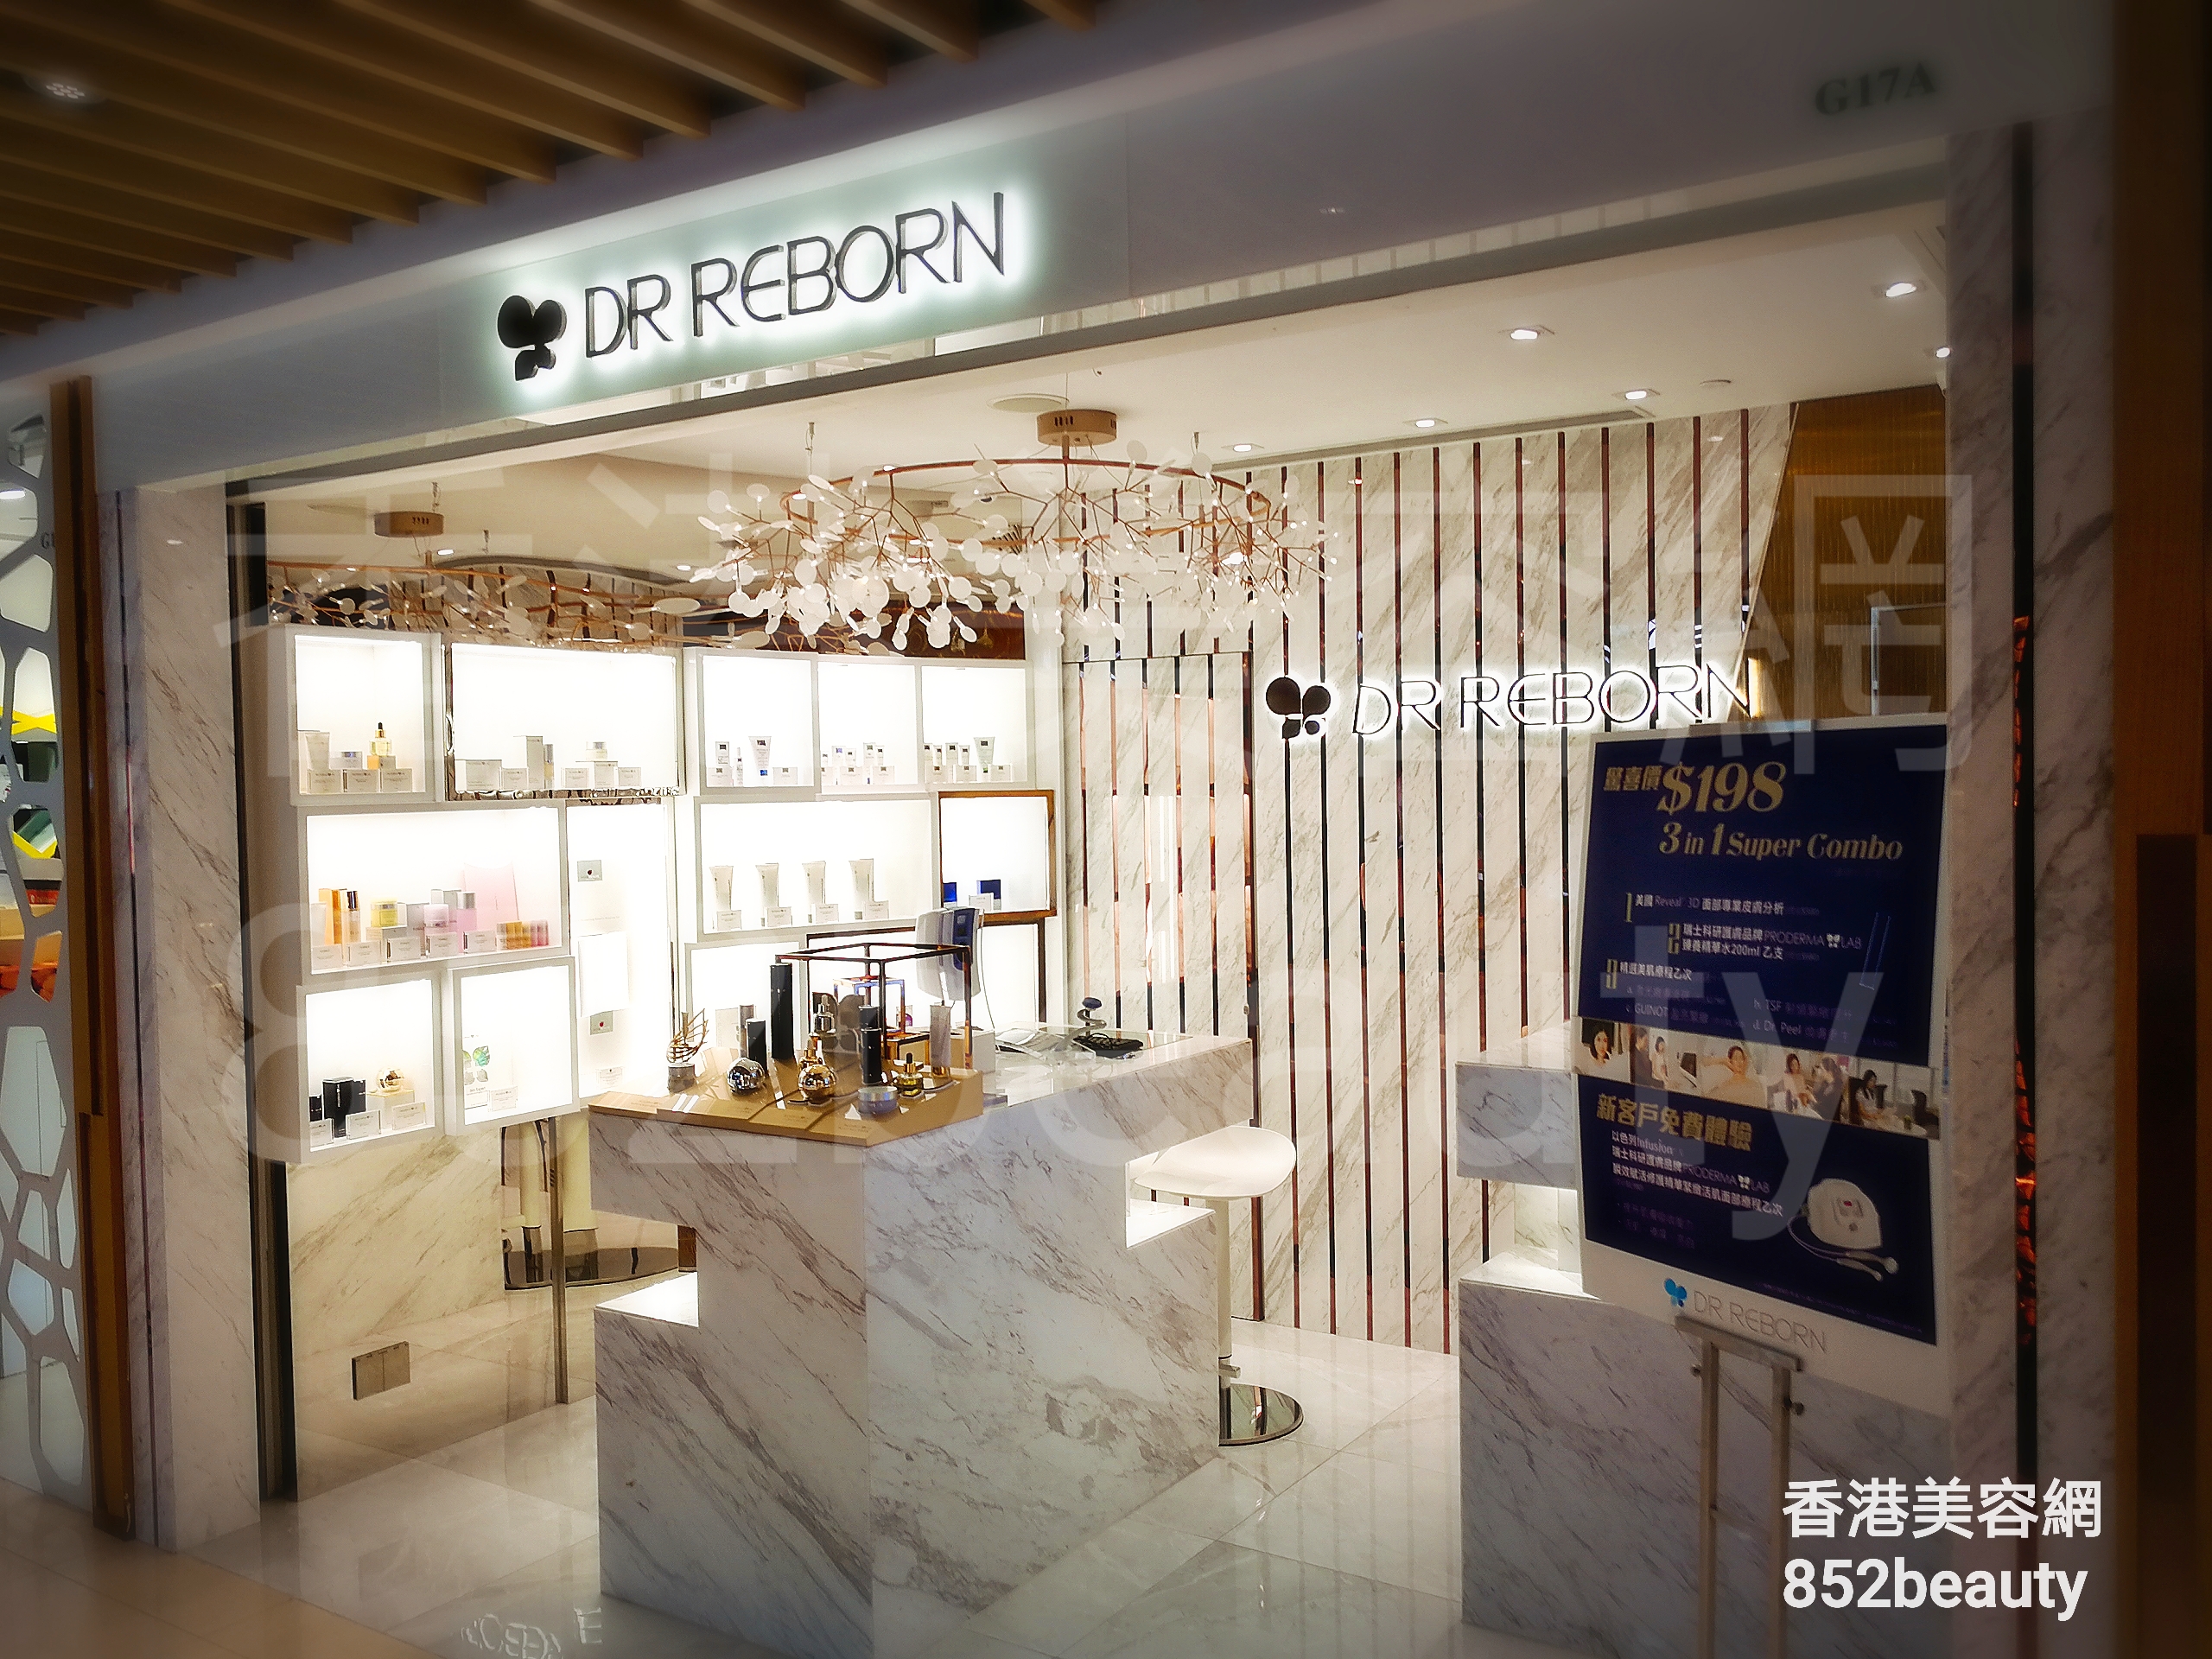 Facial Care: DR REBORN (荃灣)